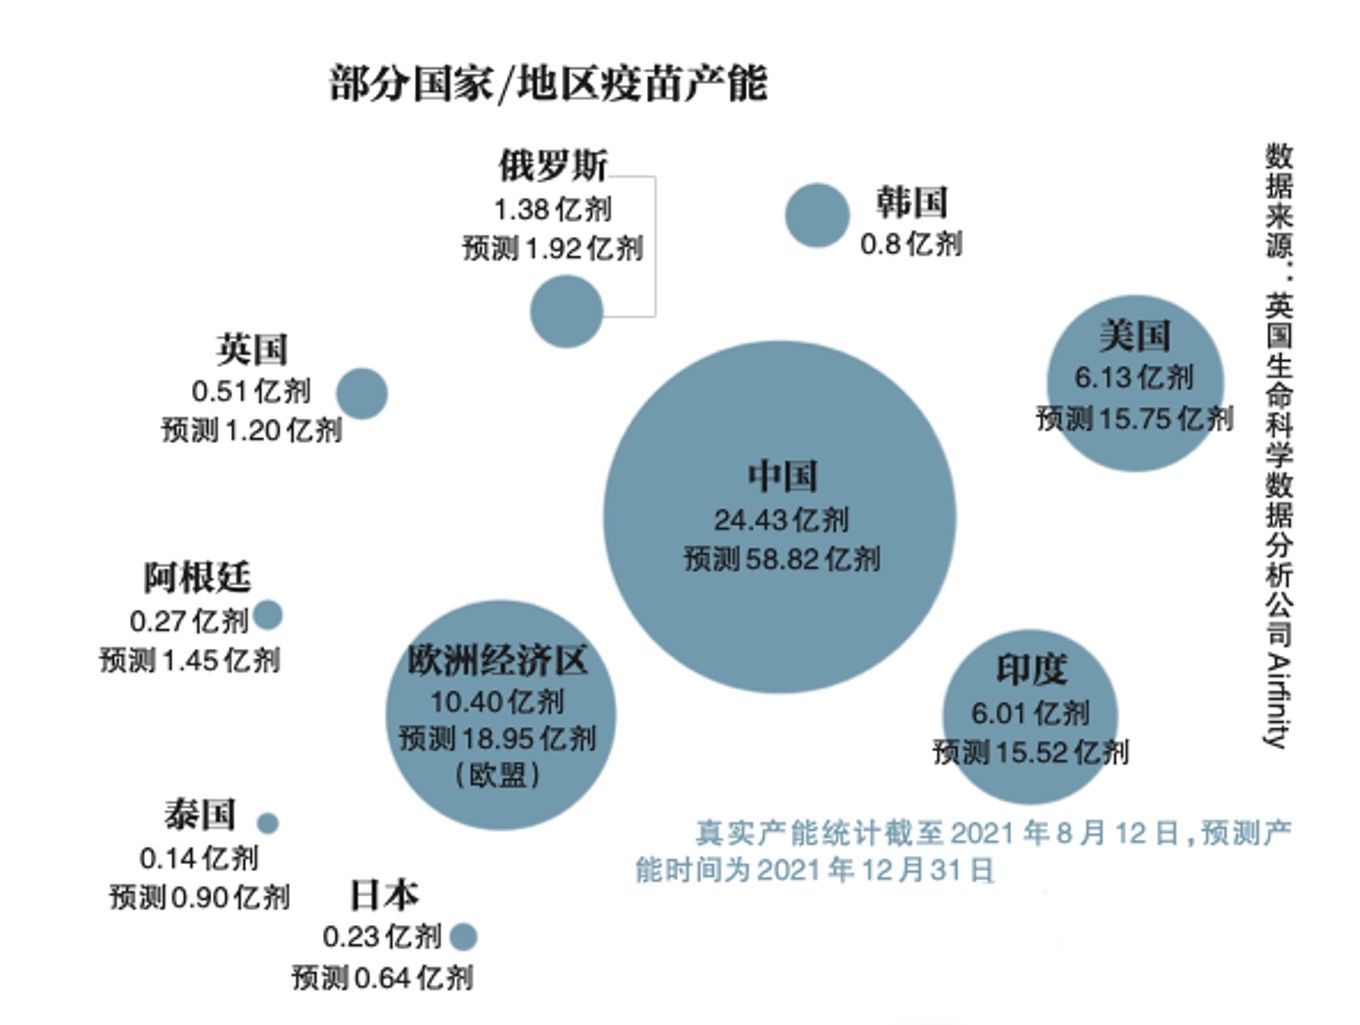 中国是全球疫苗产量最大的国家。